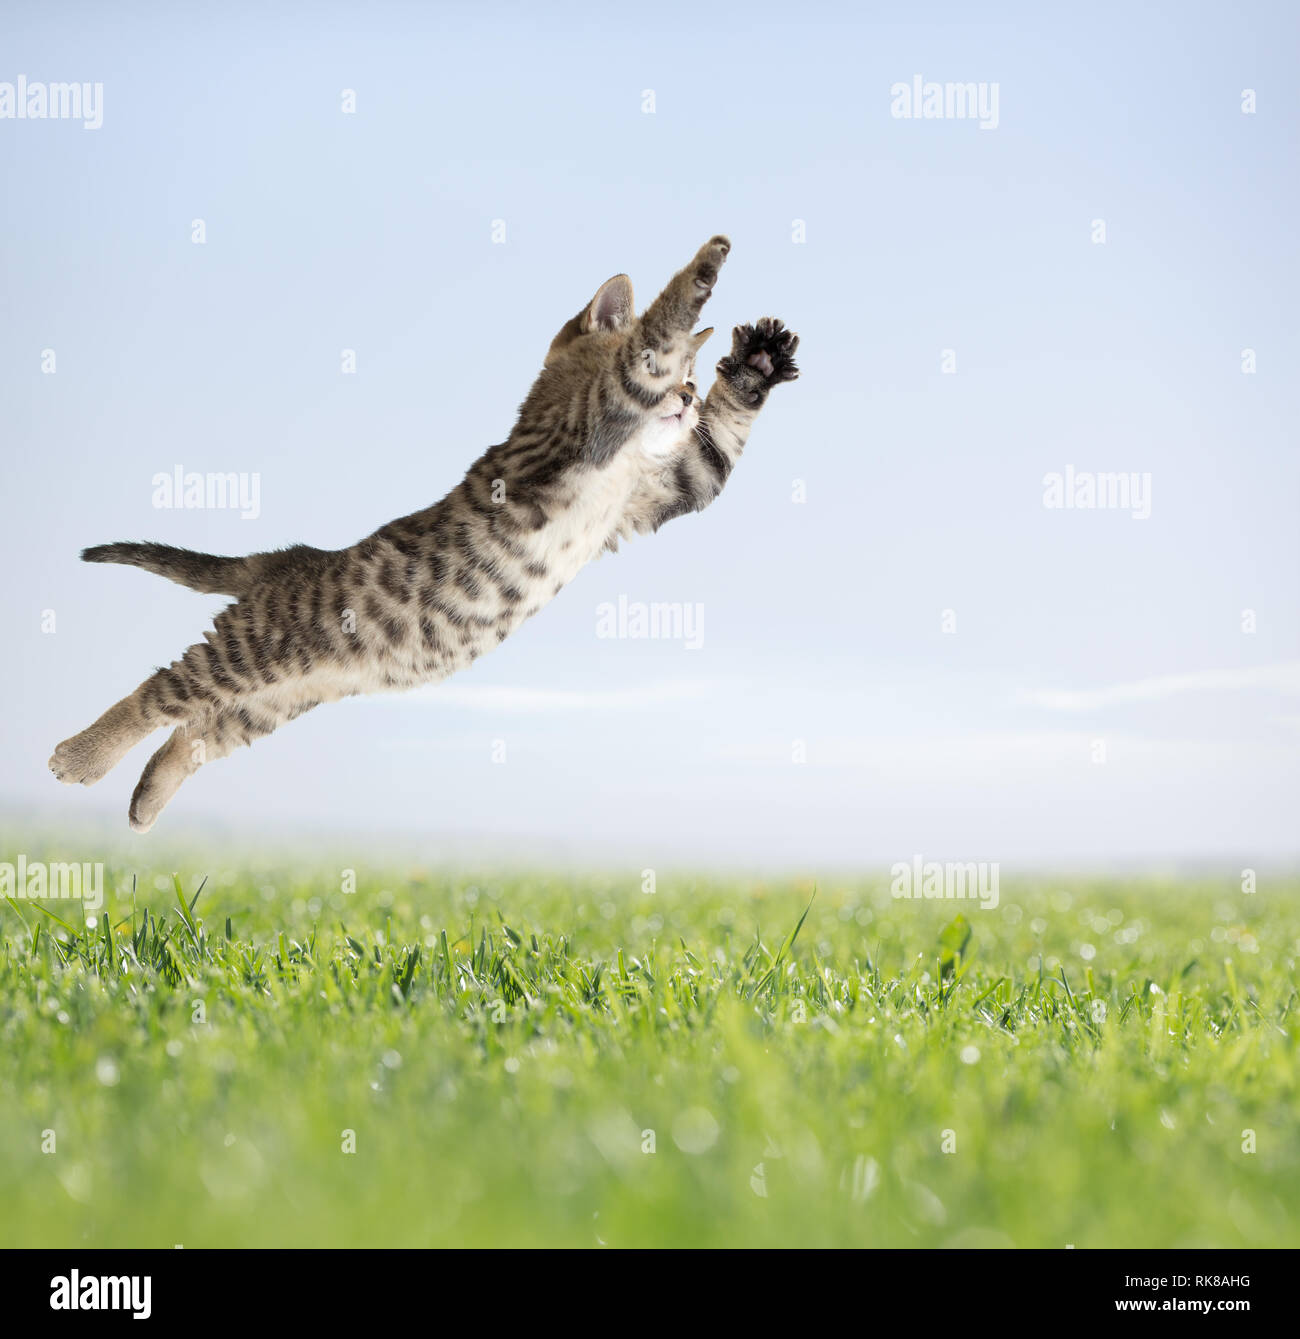 Cat jumping in erba verde Foto Stock